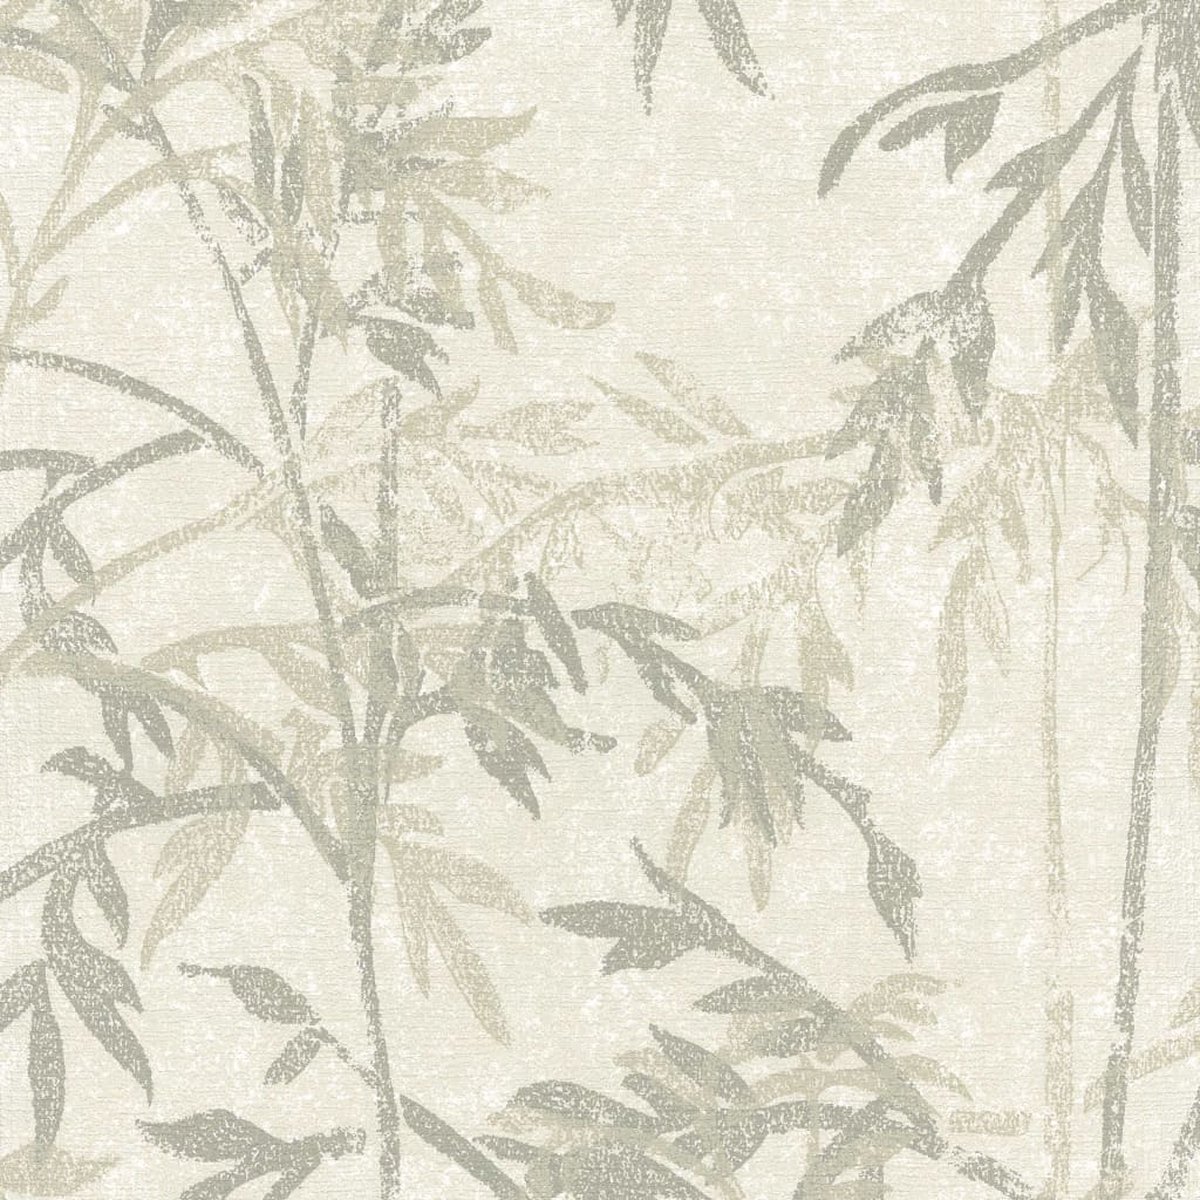 Topchic | bamboe bladeren | grijs, groen, zand | vliesbehang 0,53x10m - Noordwand